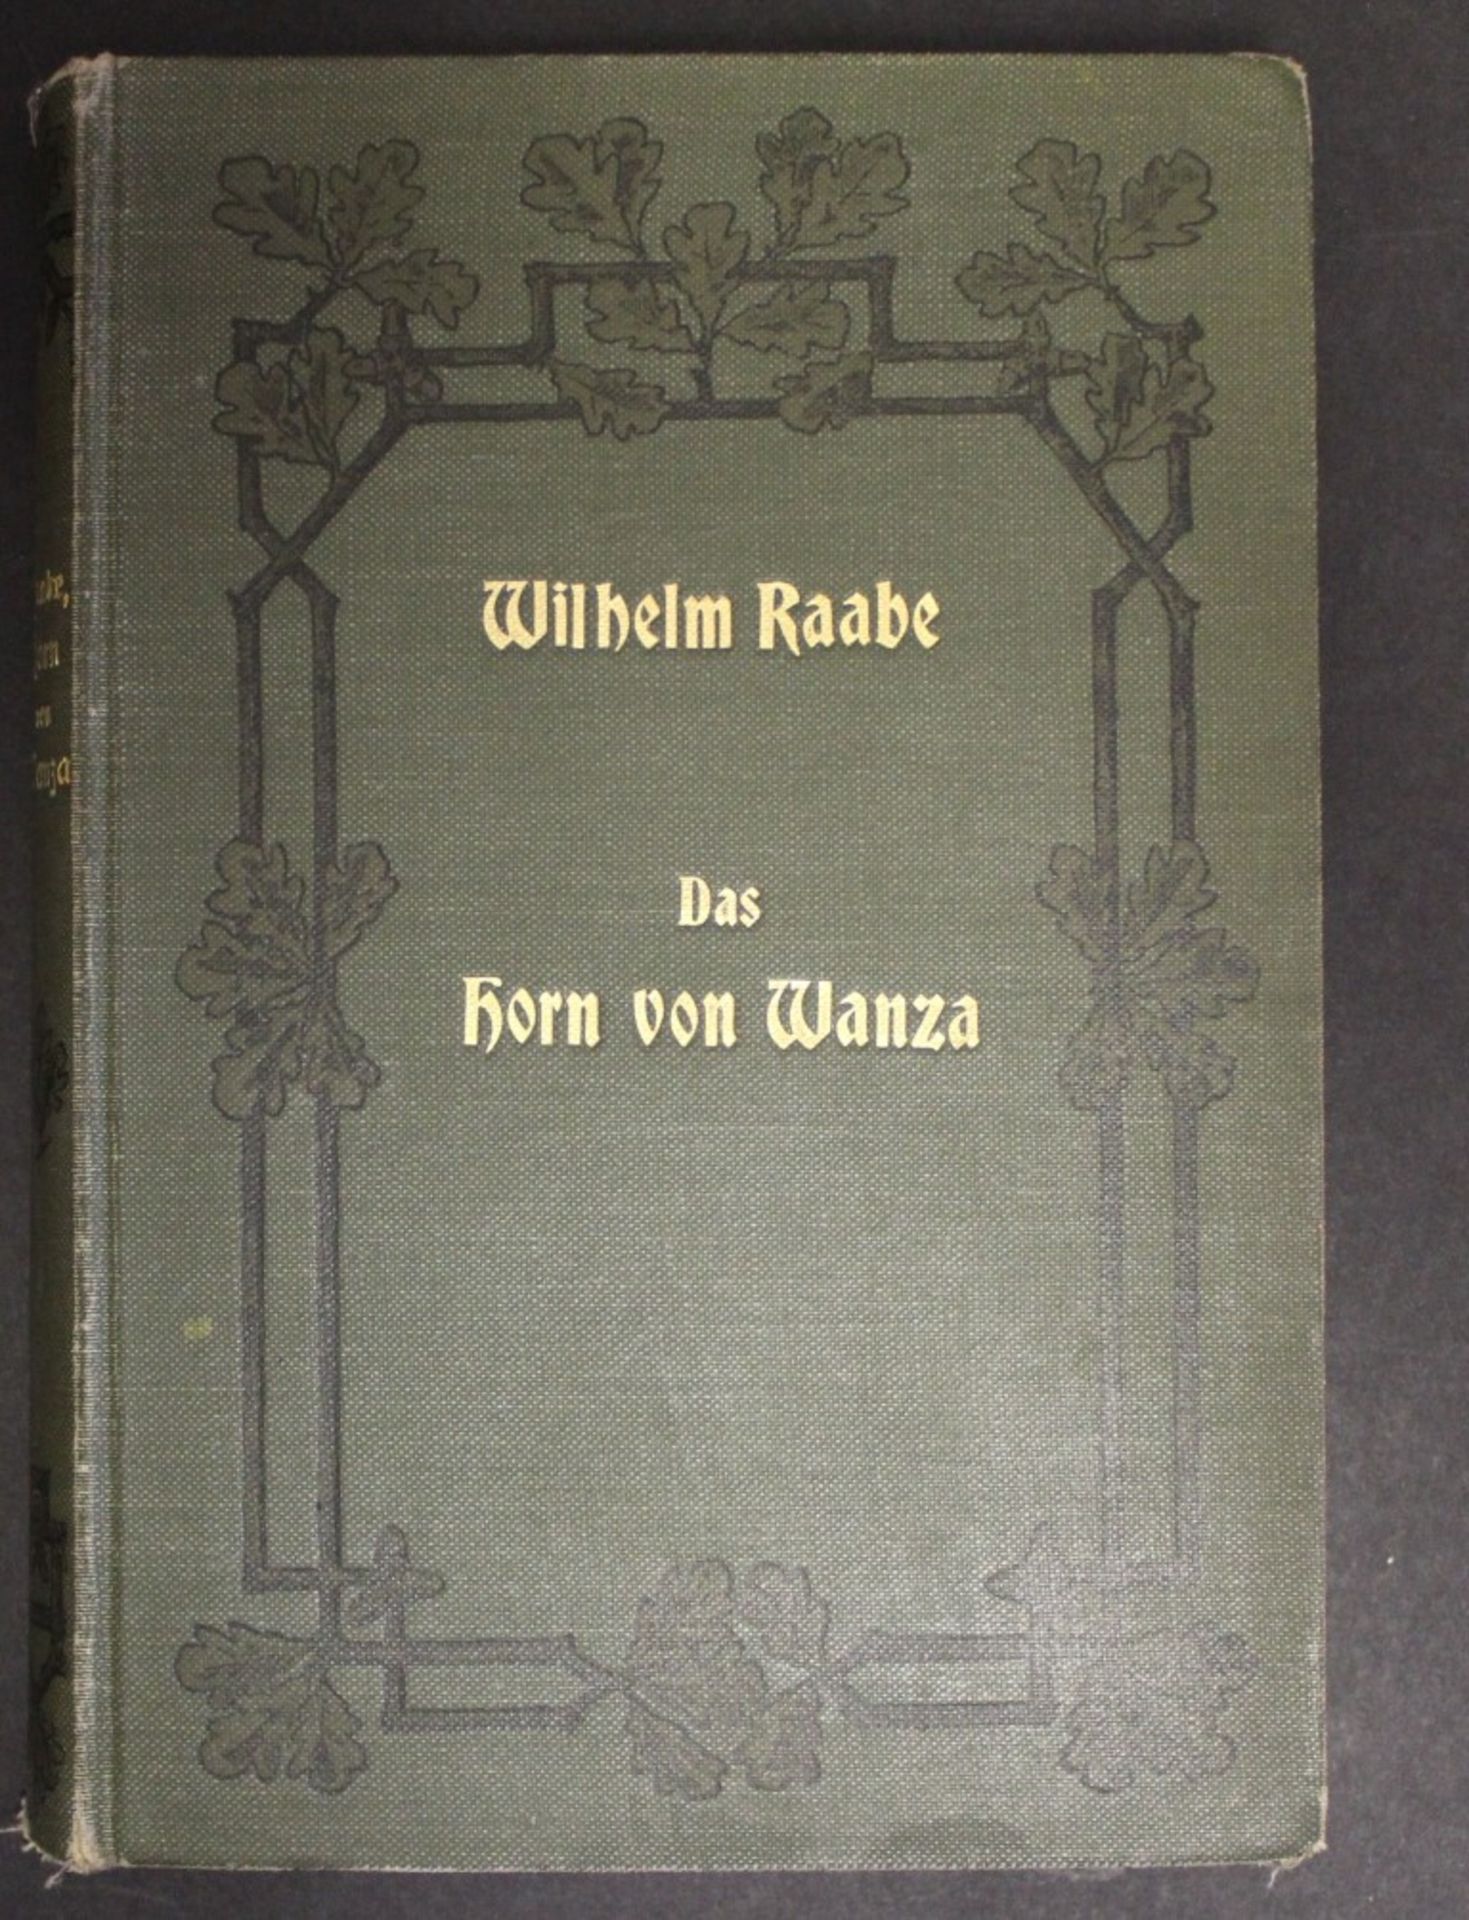 Das Horn von Wanza, Eine Erzählung von Wilhelm Raabe, Berlin 1903, dritte Auflage, Alters-u.